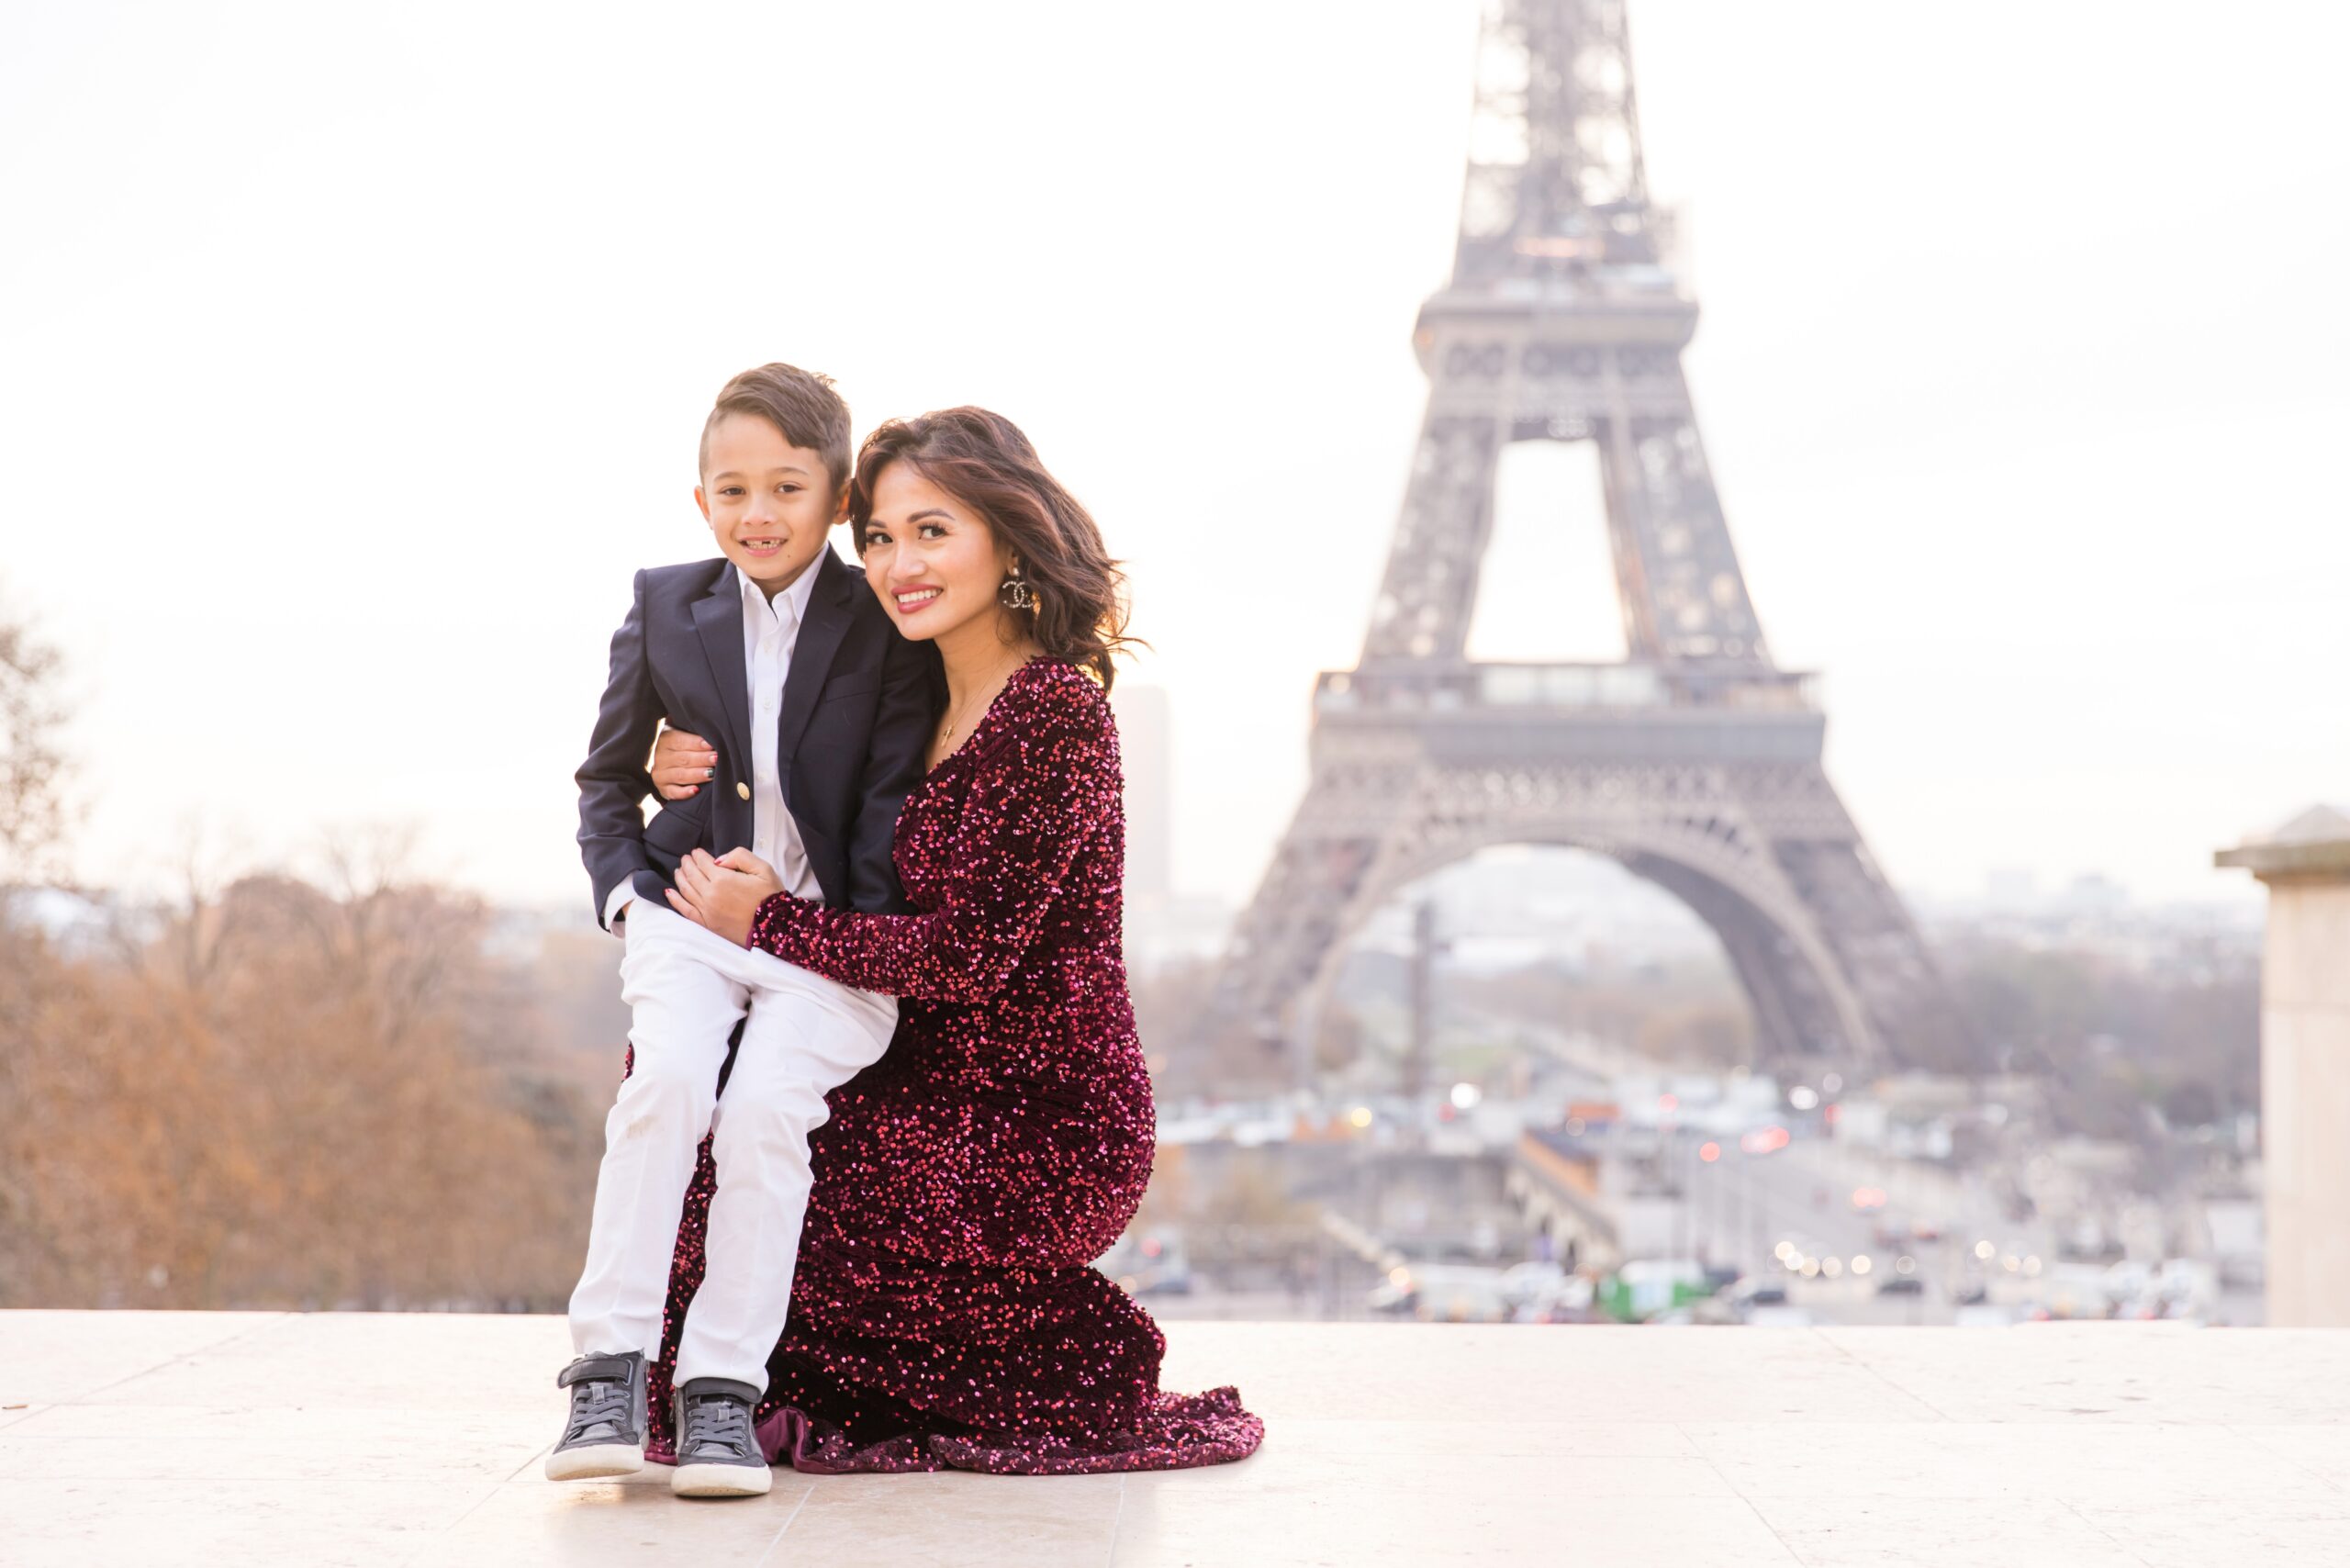 Paris, France, Eiffel Tower, Family Photos 